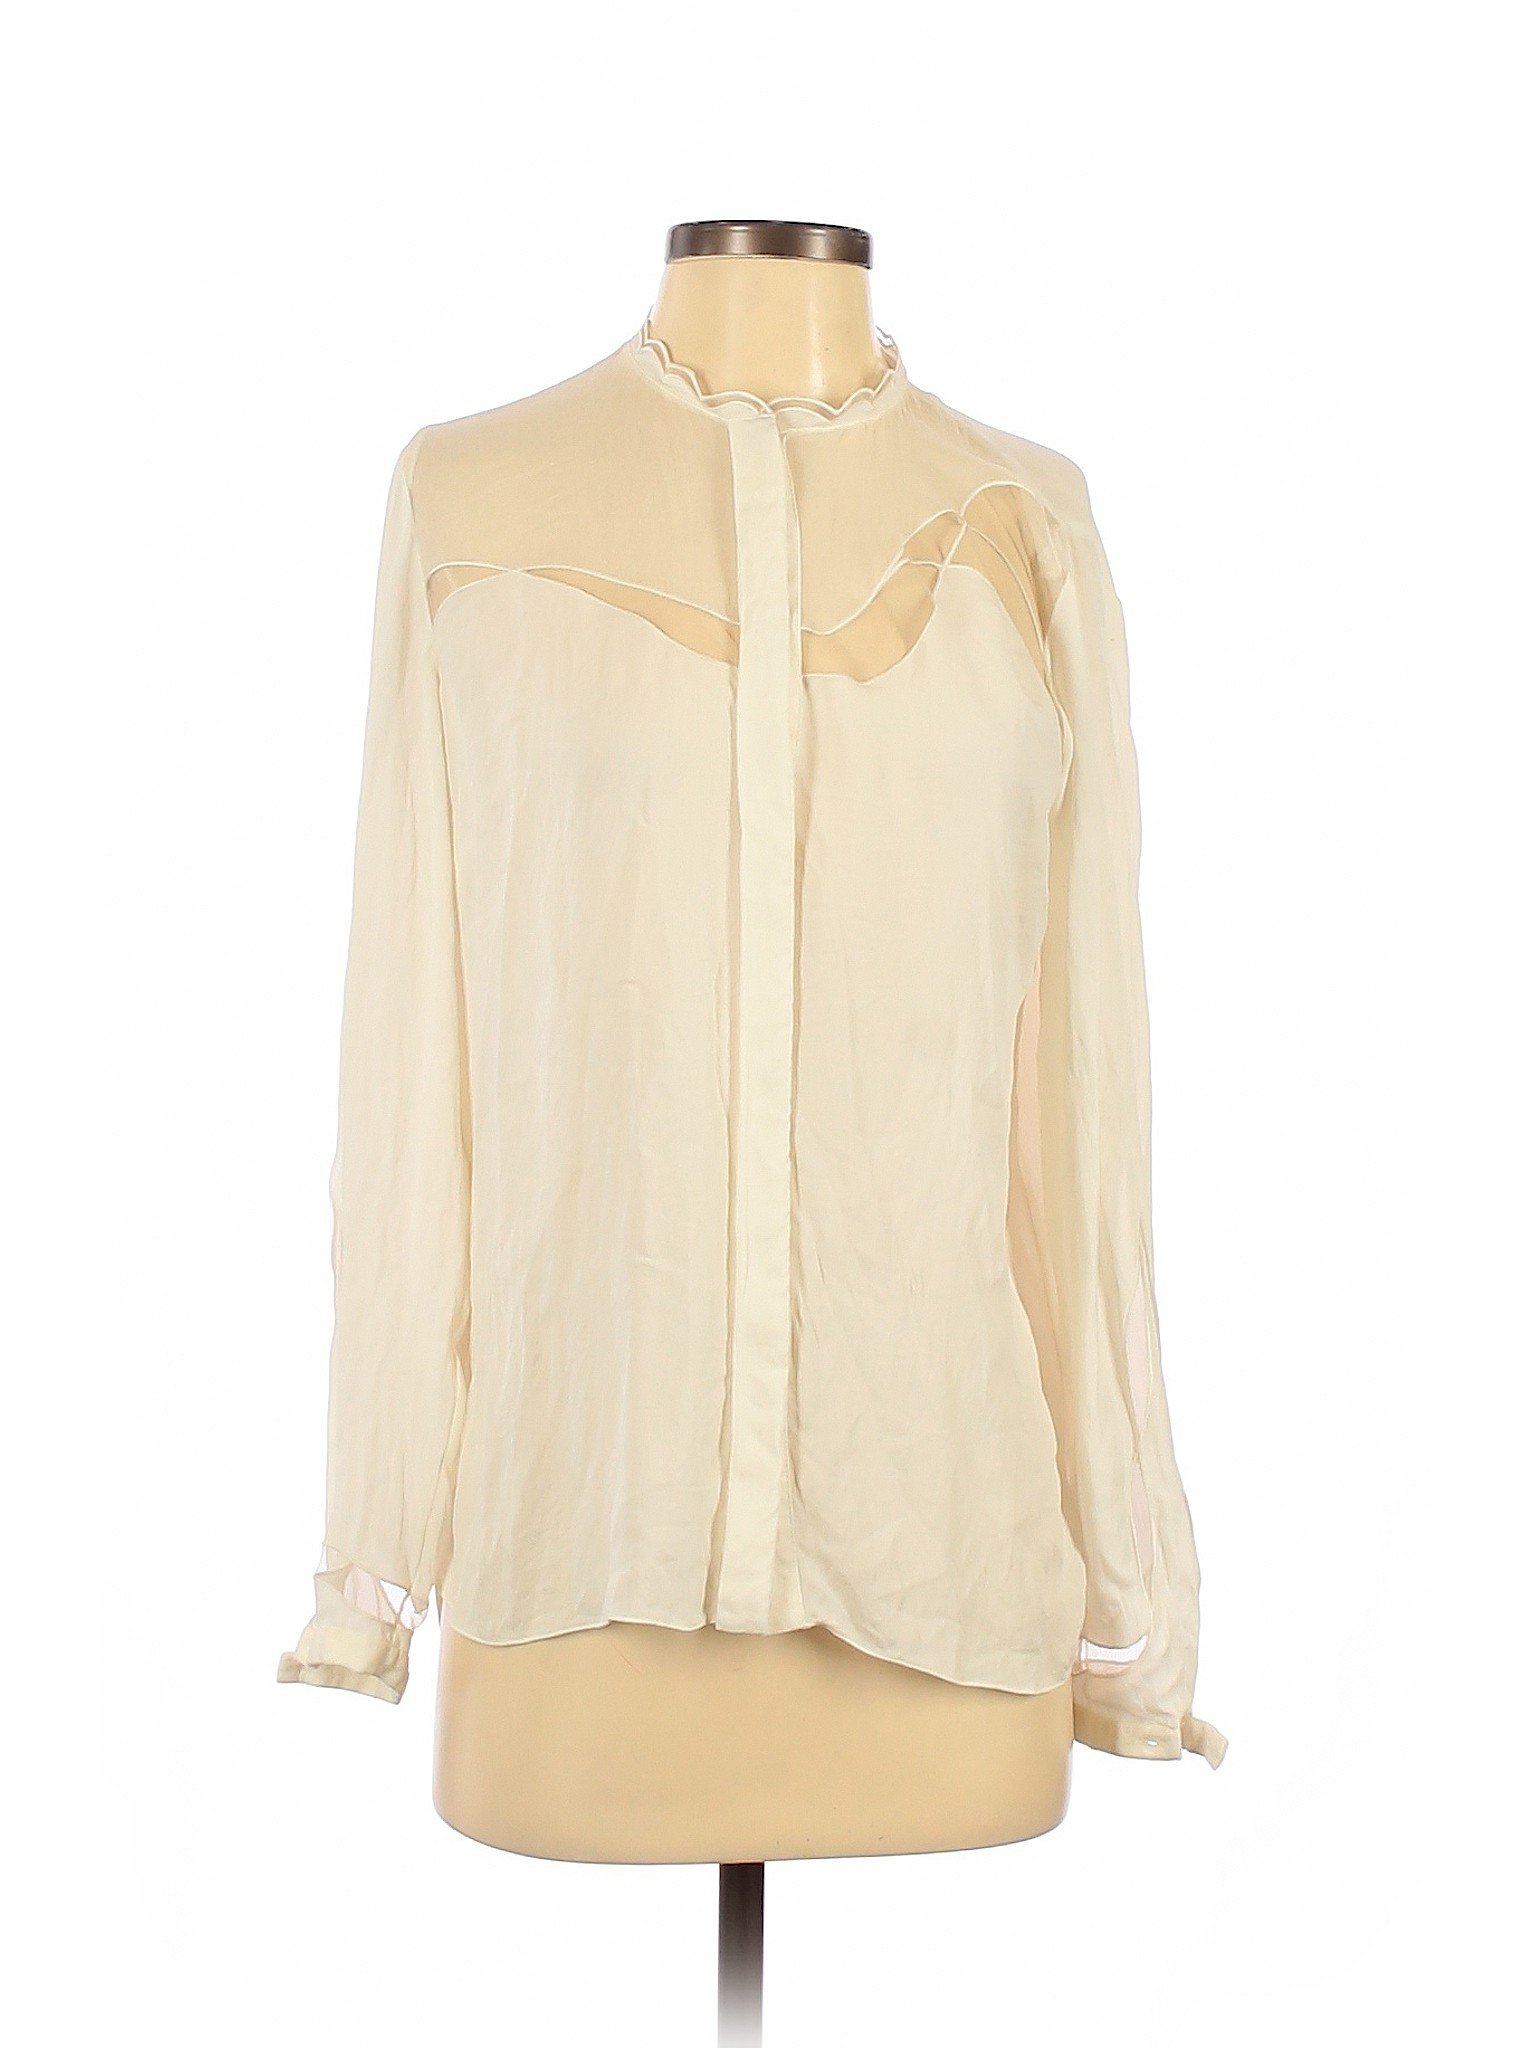 Elie Tahari Women Brown Long Sleeve Silk Top S Petites | eBay